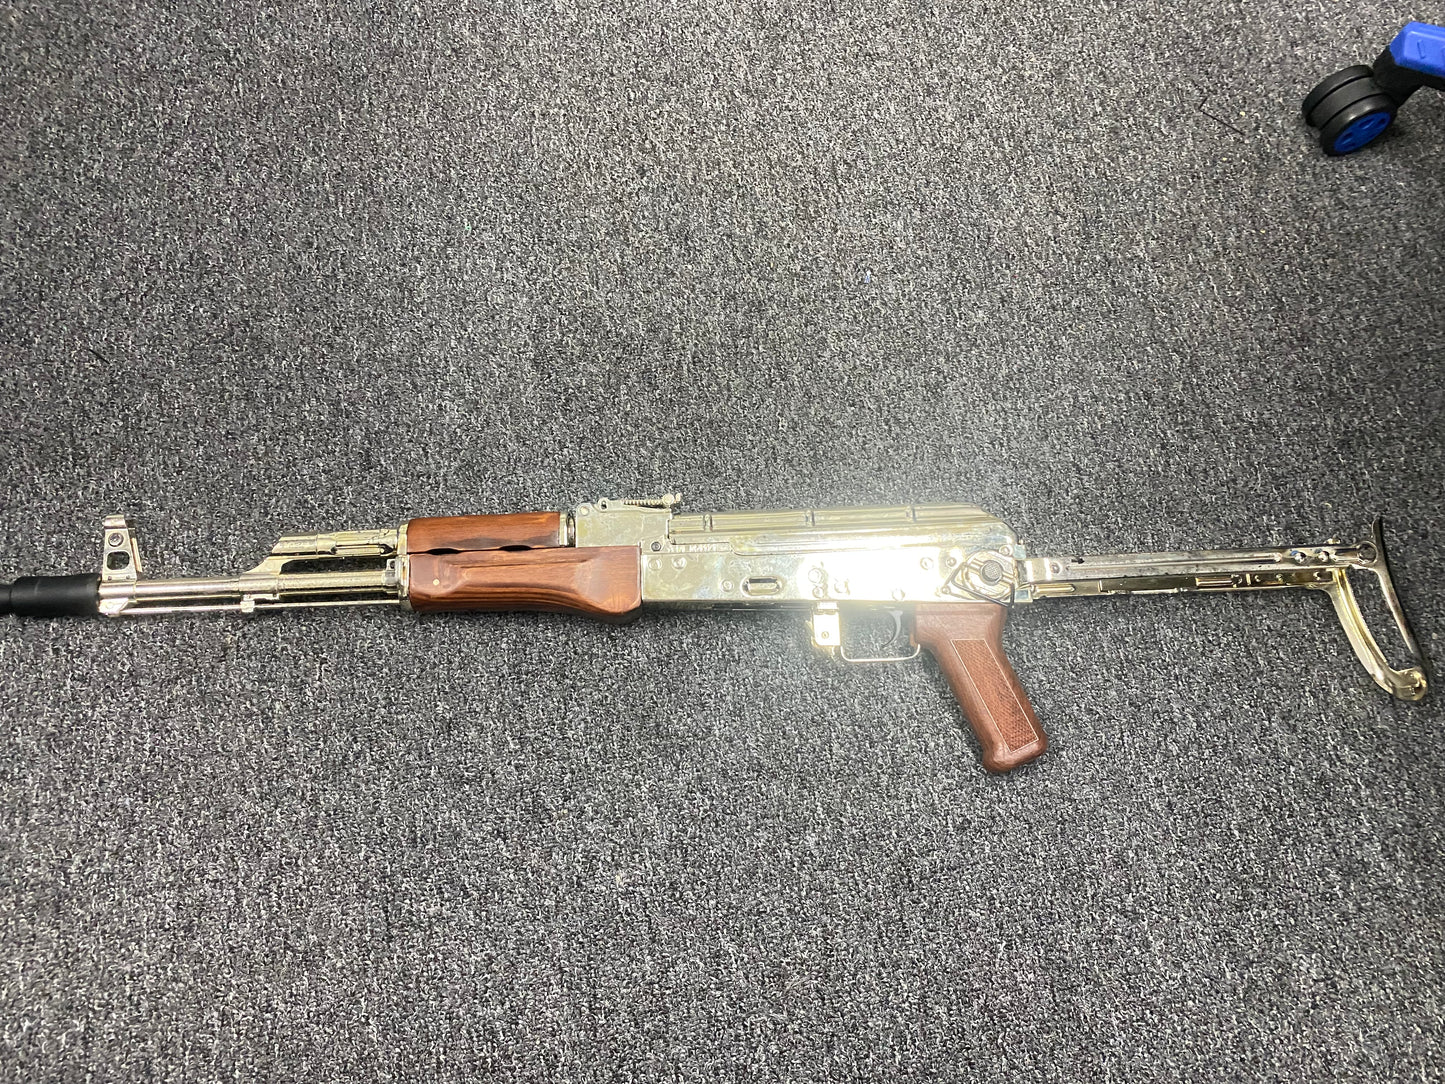 
                  
                    مسدس جل ذو جرس مزدوج فضي من نوع AK قابل للطي من اليد الثانية
                  
                